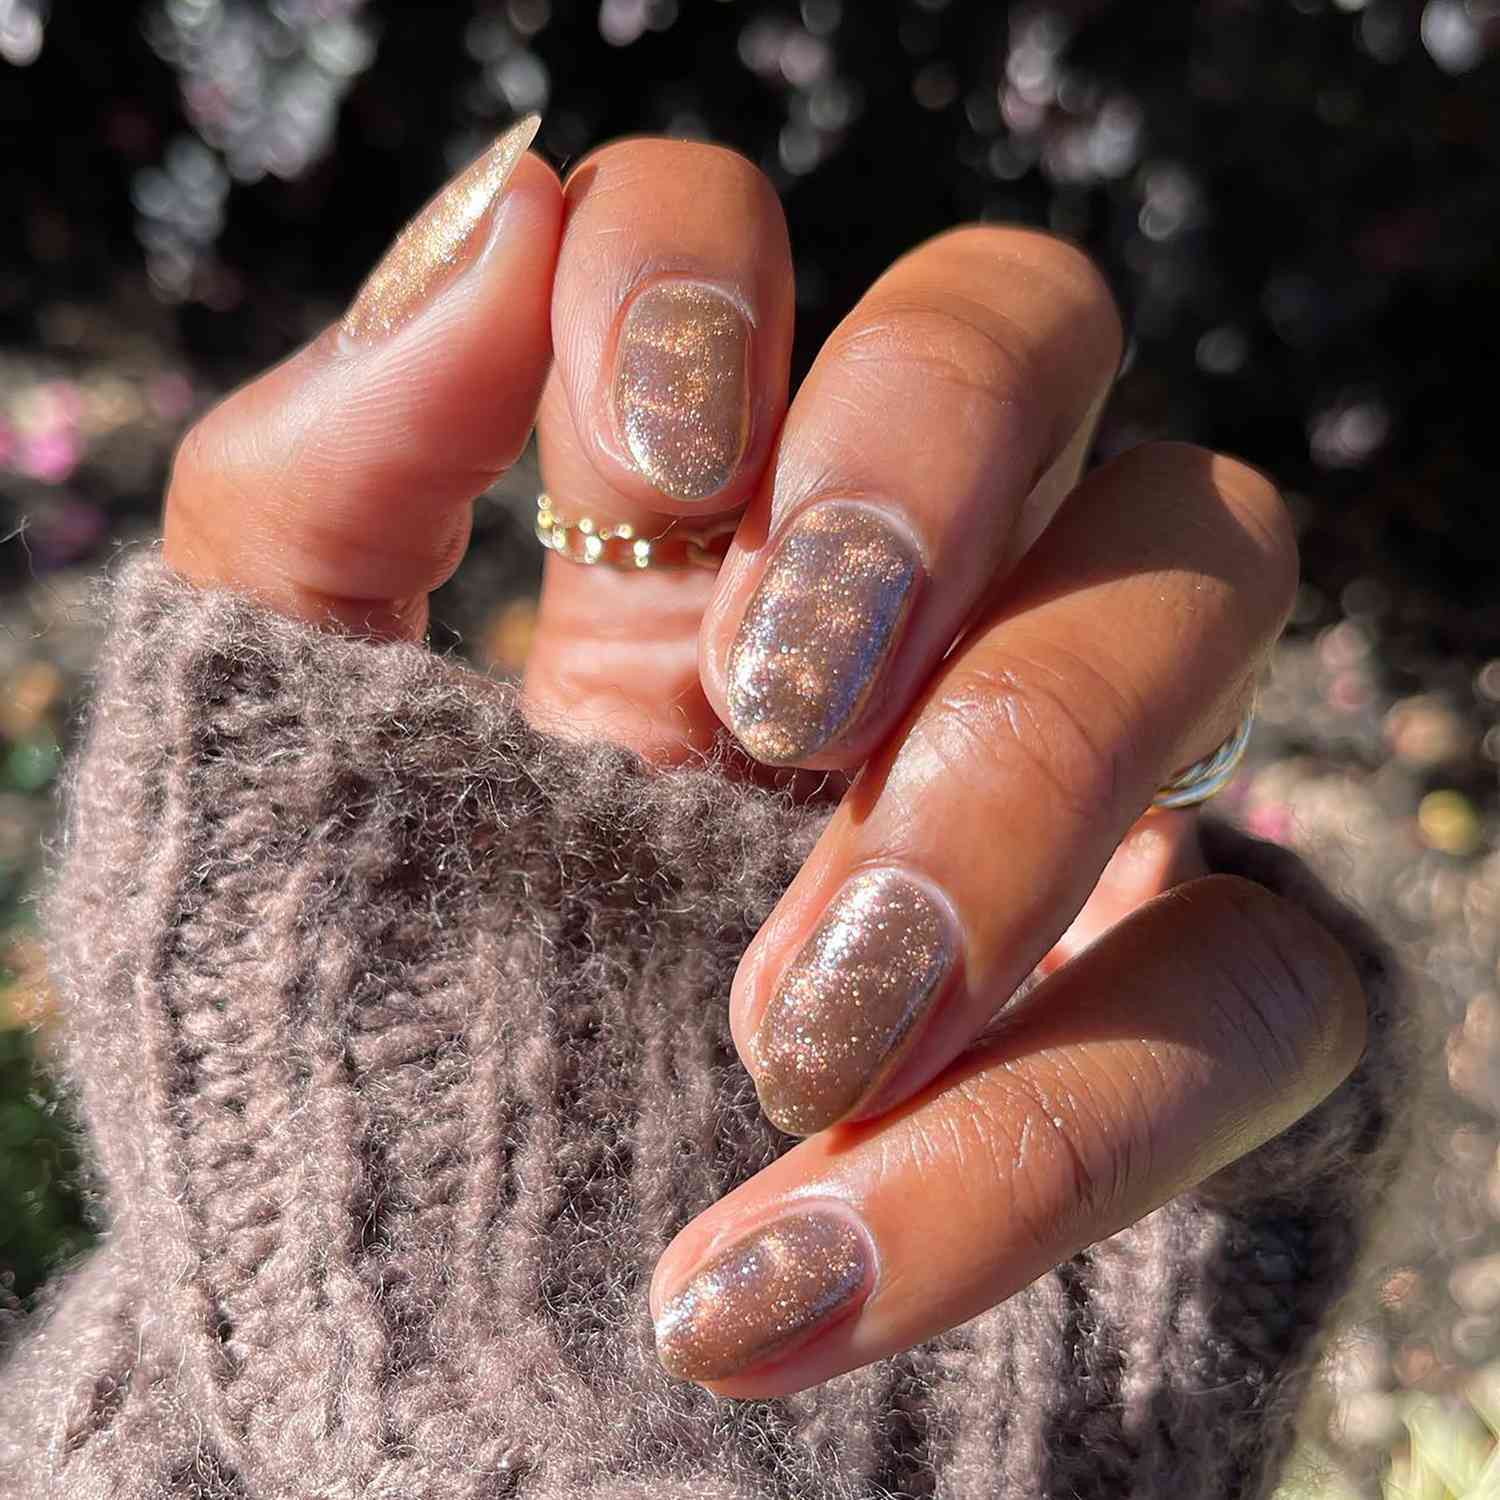 Uma mão em close-up com uma manicure magnética marrom-mel dobrada sobre um suéter grosso